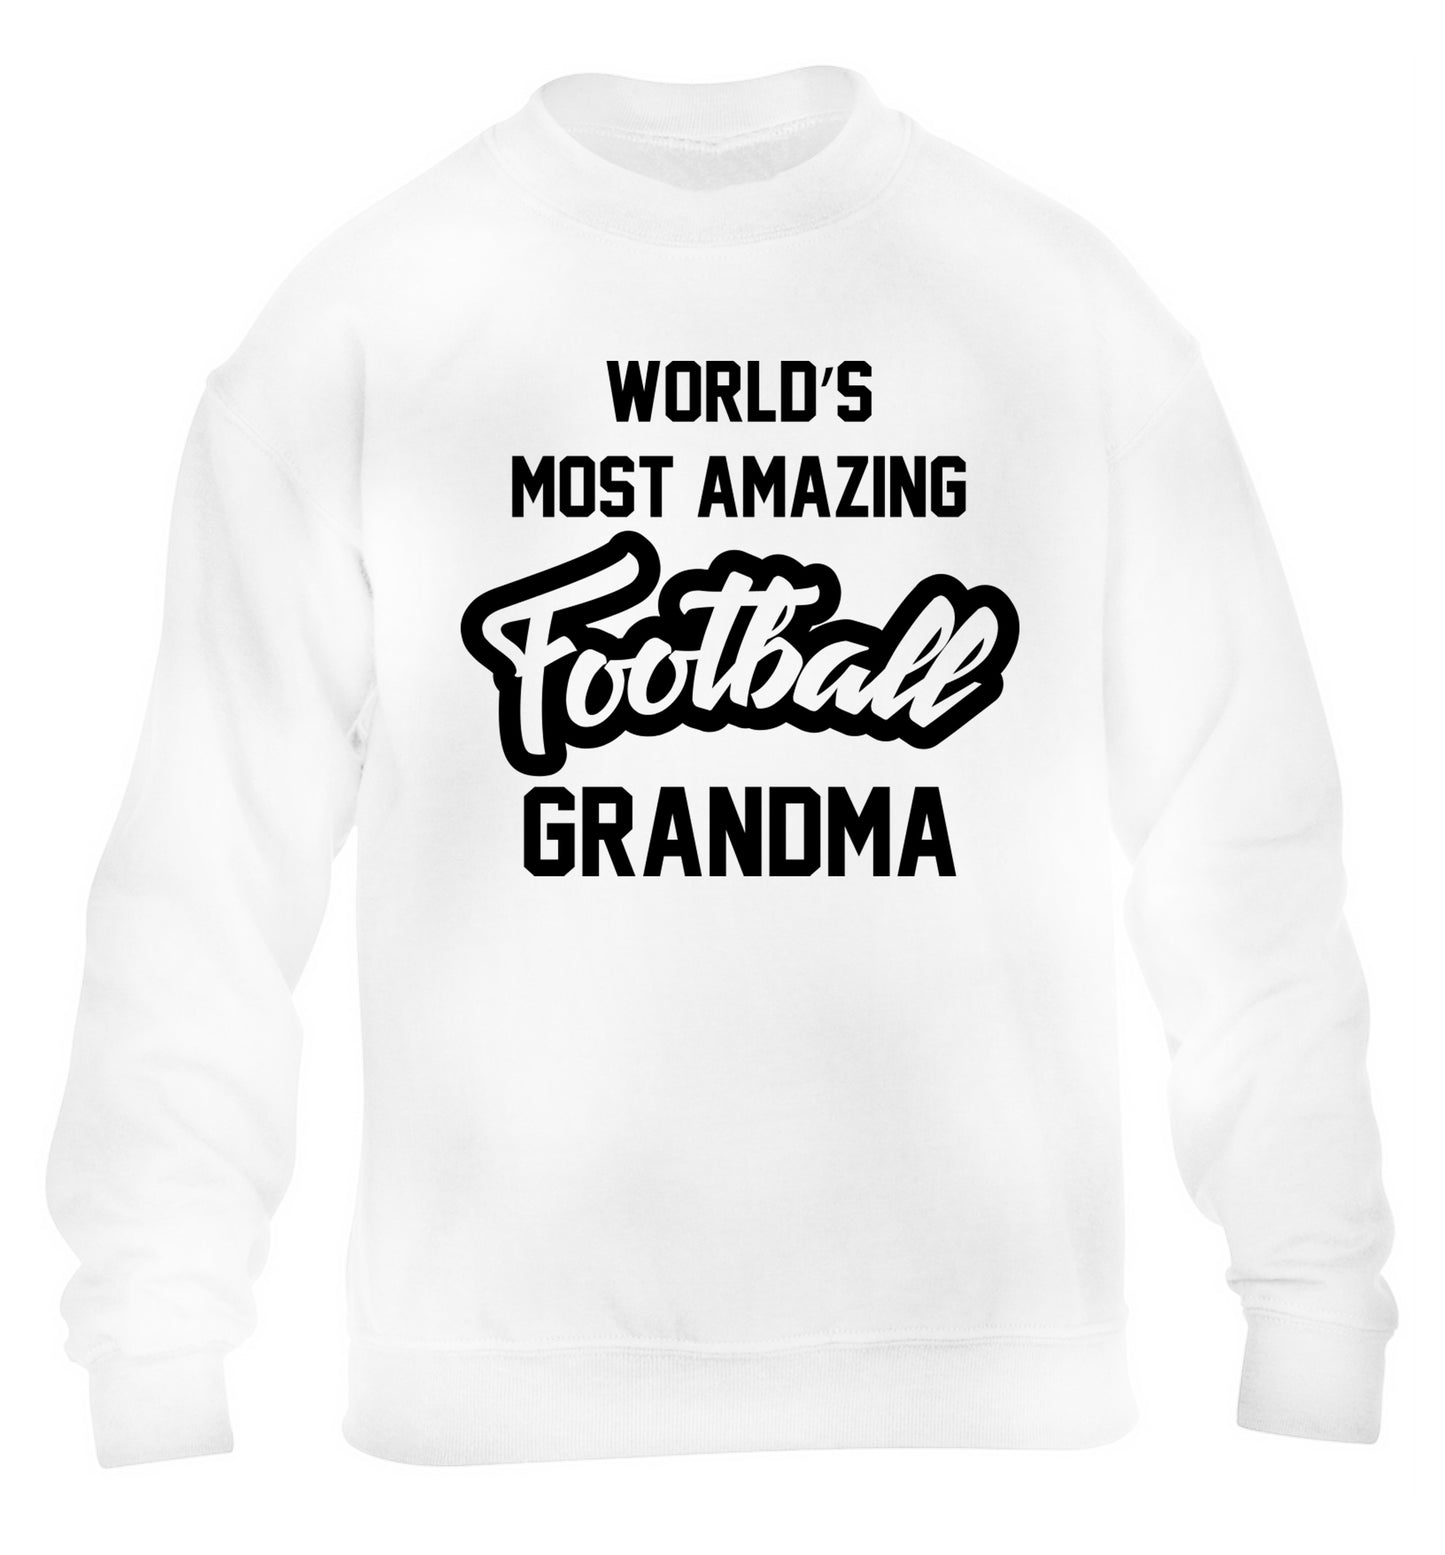 Worlds most amazing football grandma children's white sweater 12-14 Years